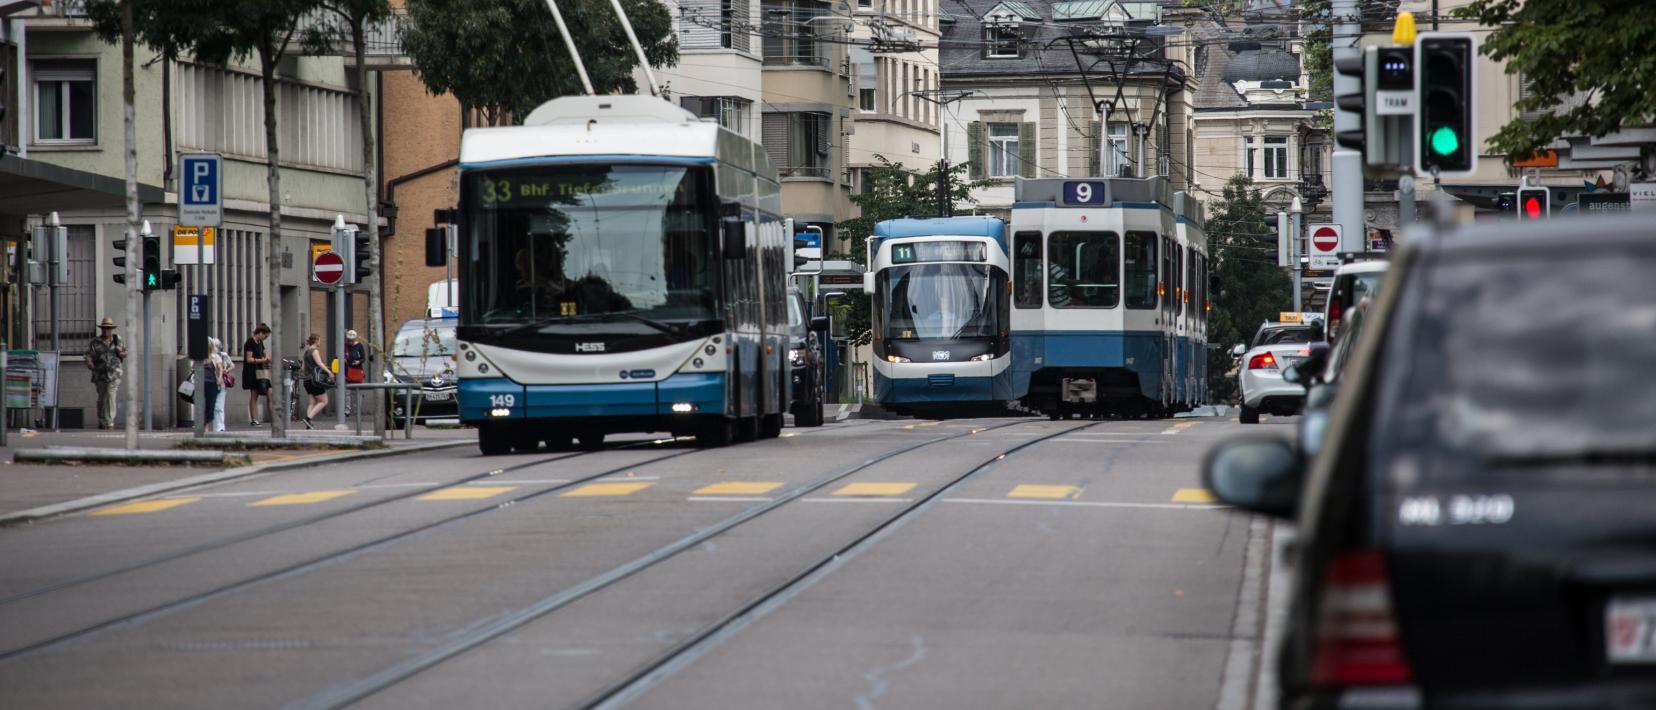 Das Bild zeigt zwei Trams und einen Trolleybus in der Stadt Zürich.